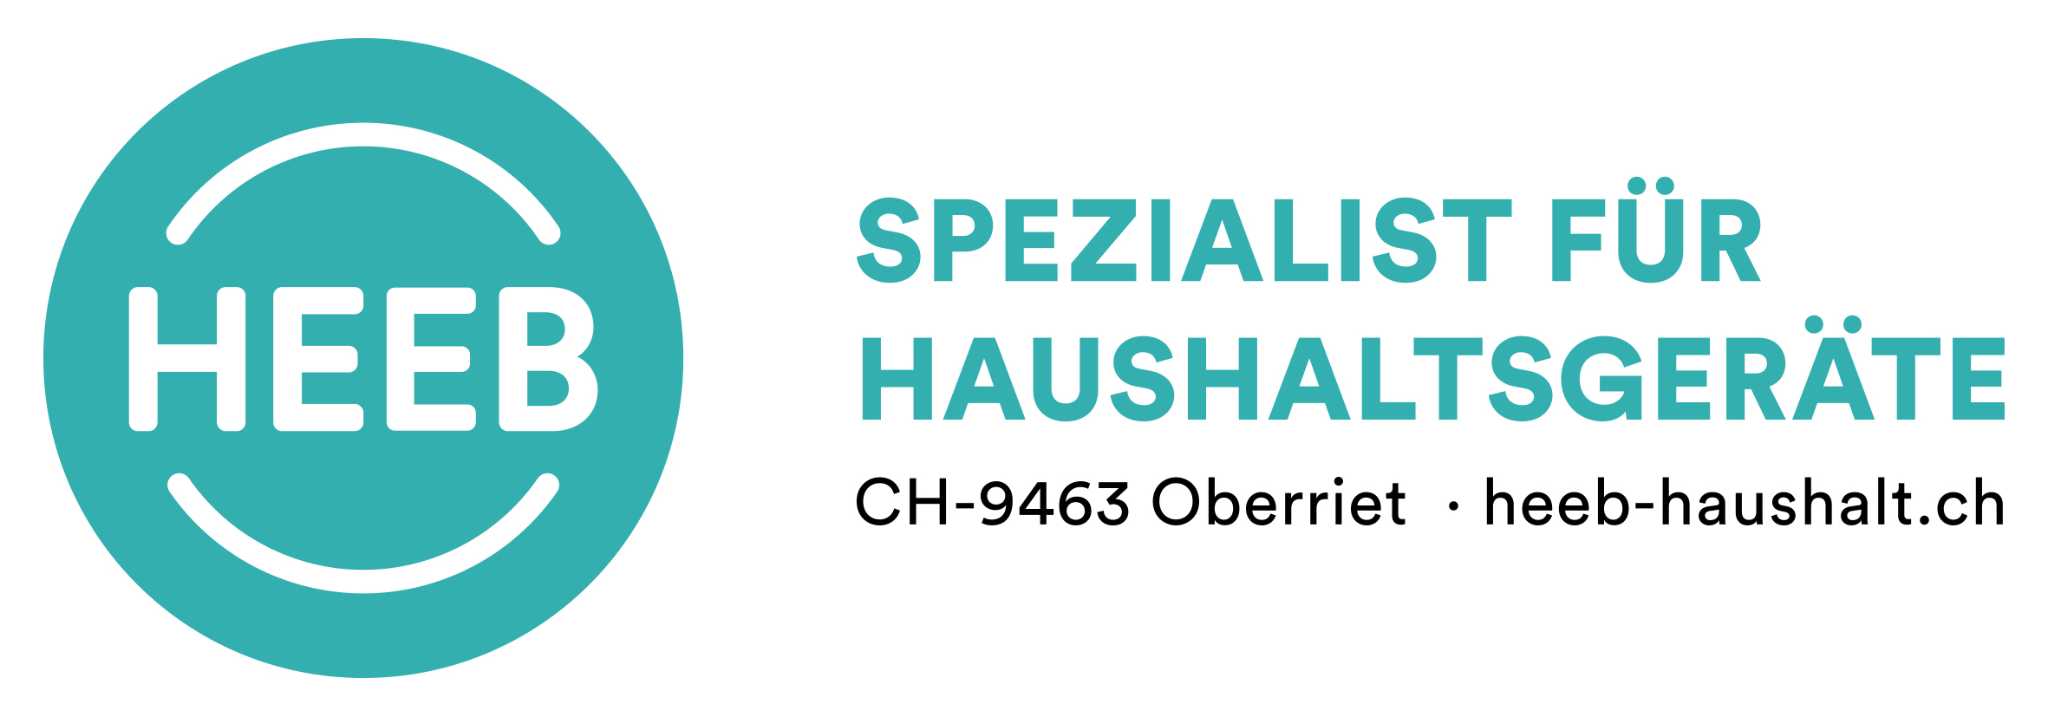 Heeb Haushaltapparate GmbH